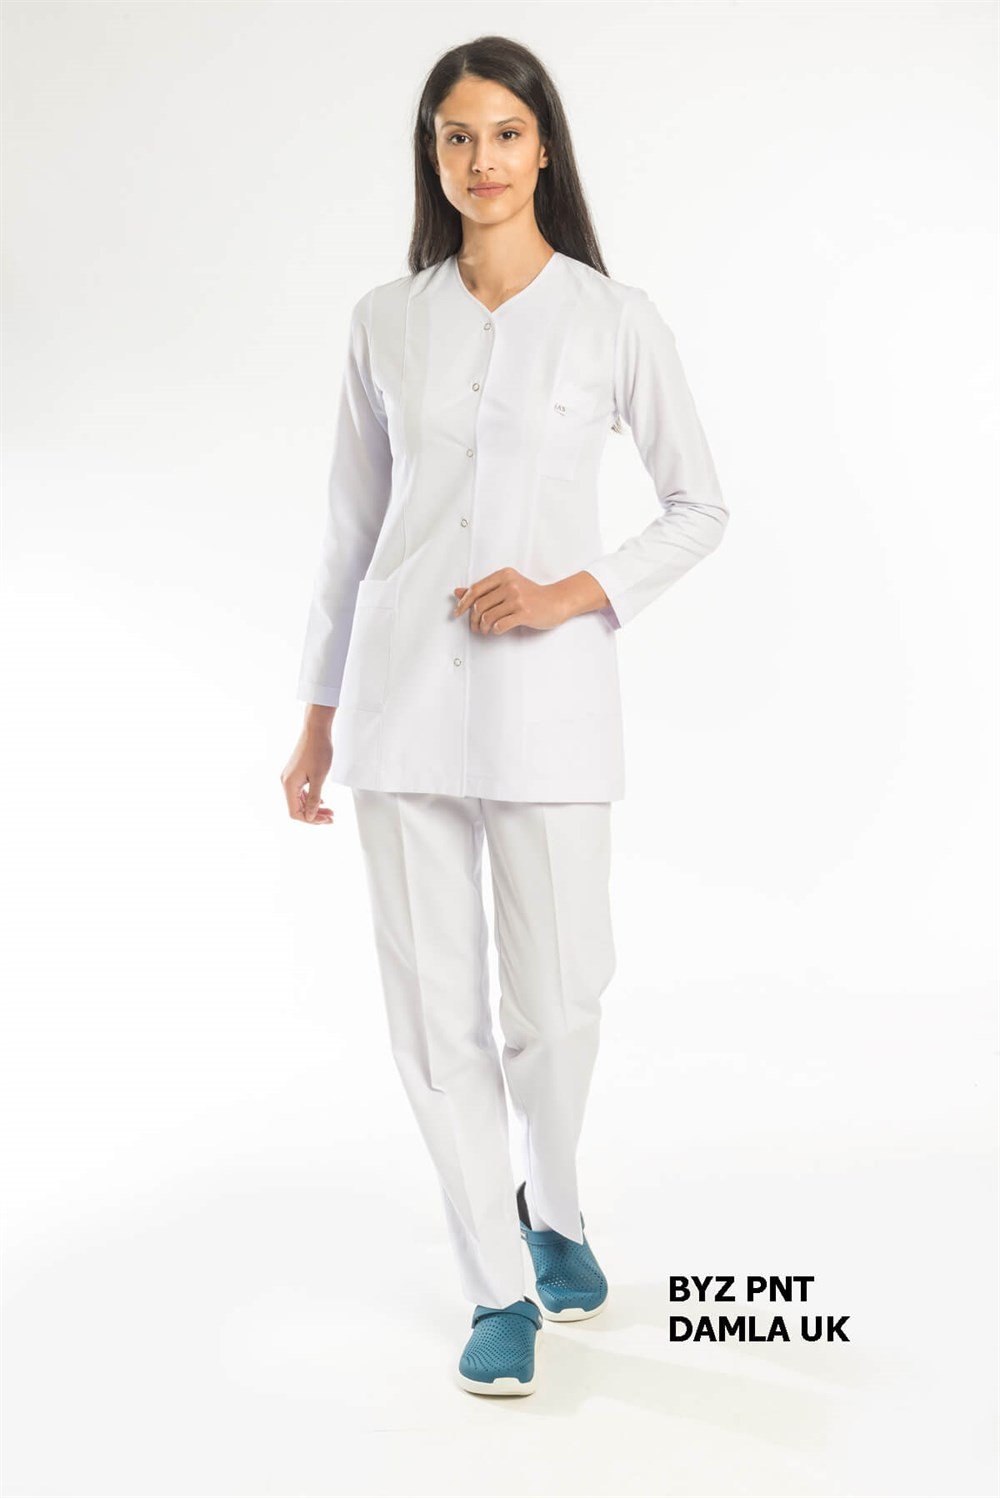 Uzun Kollu Forma Takımı | Tesettür Boy Beyaz Forma | Doktor Hemşire Forması